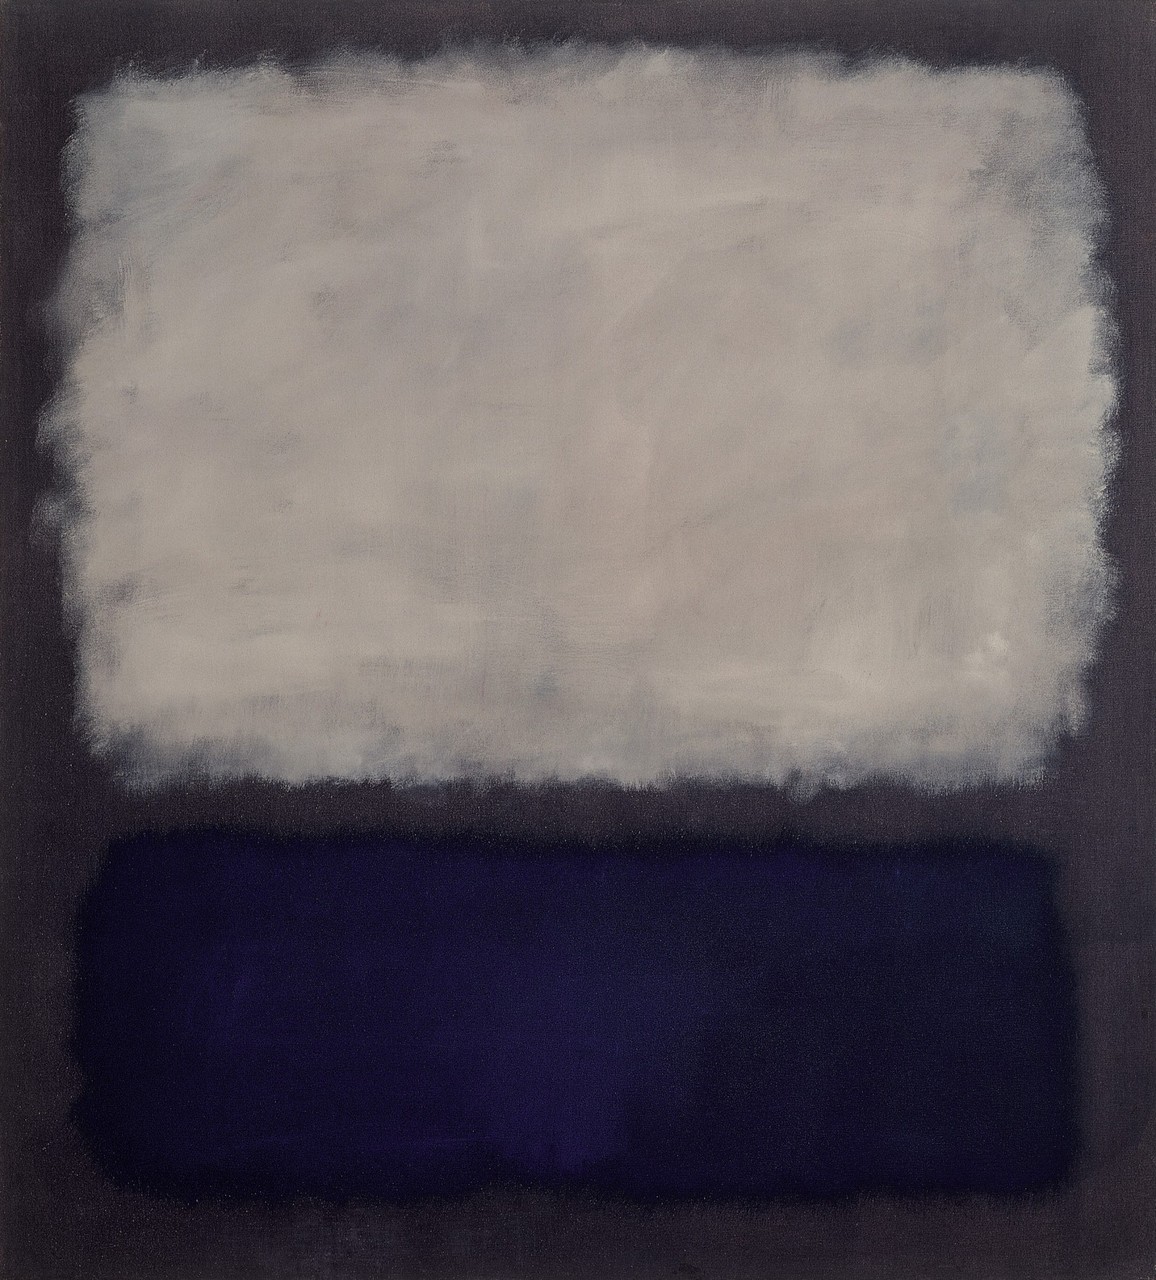 Niebieski i Szary by Mark Rothko - 1962  - 193 × 175 cm 